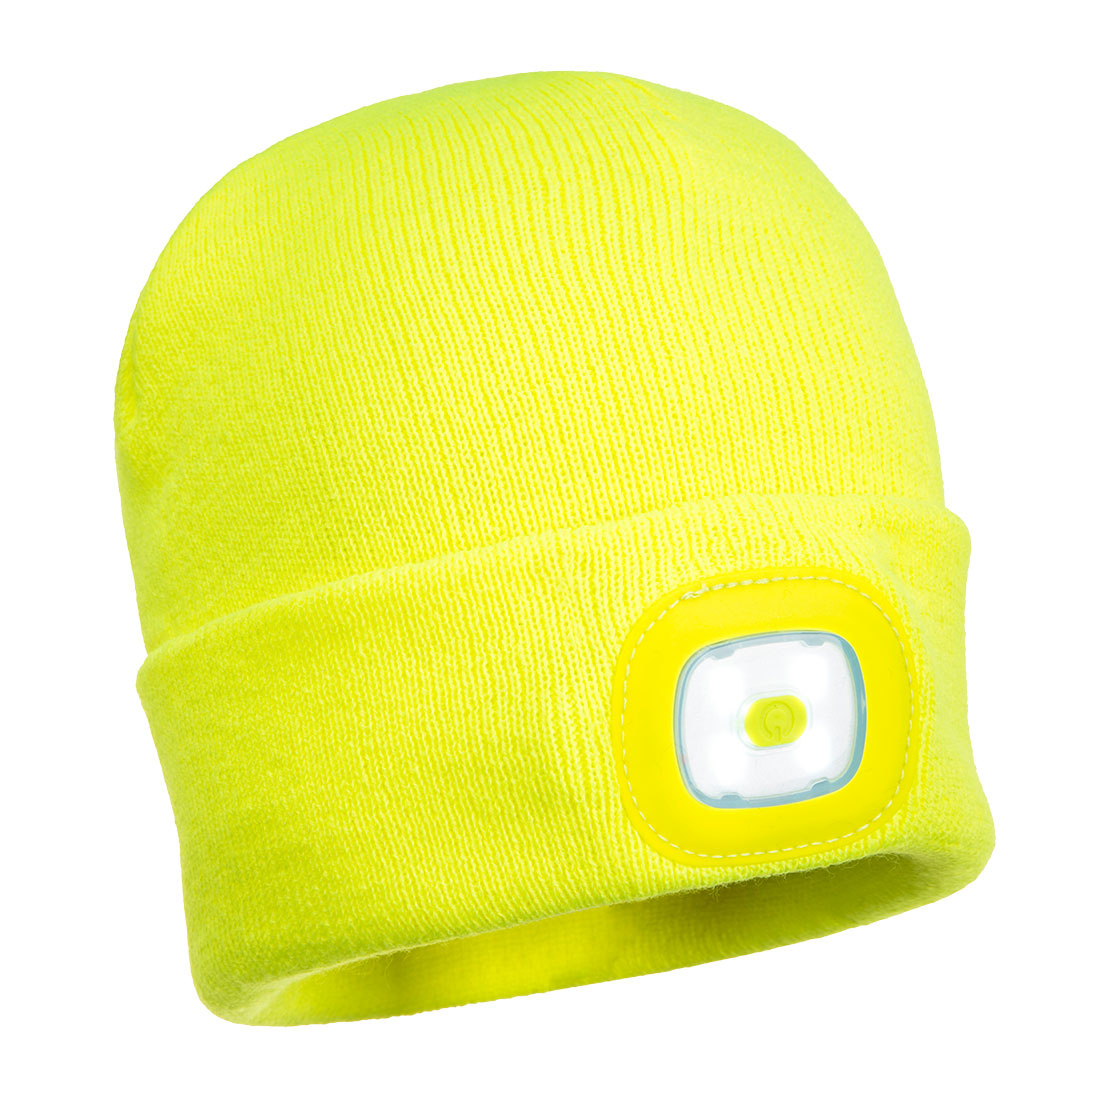 Portwest Kindermütze B027, mit LED Kopflicht, Gelb